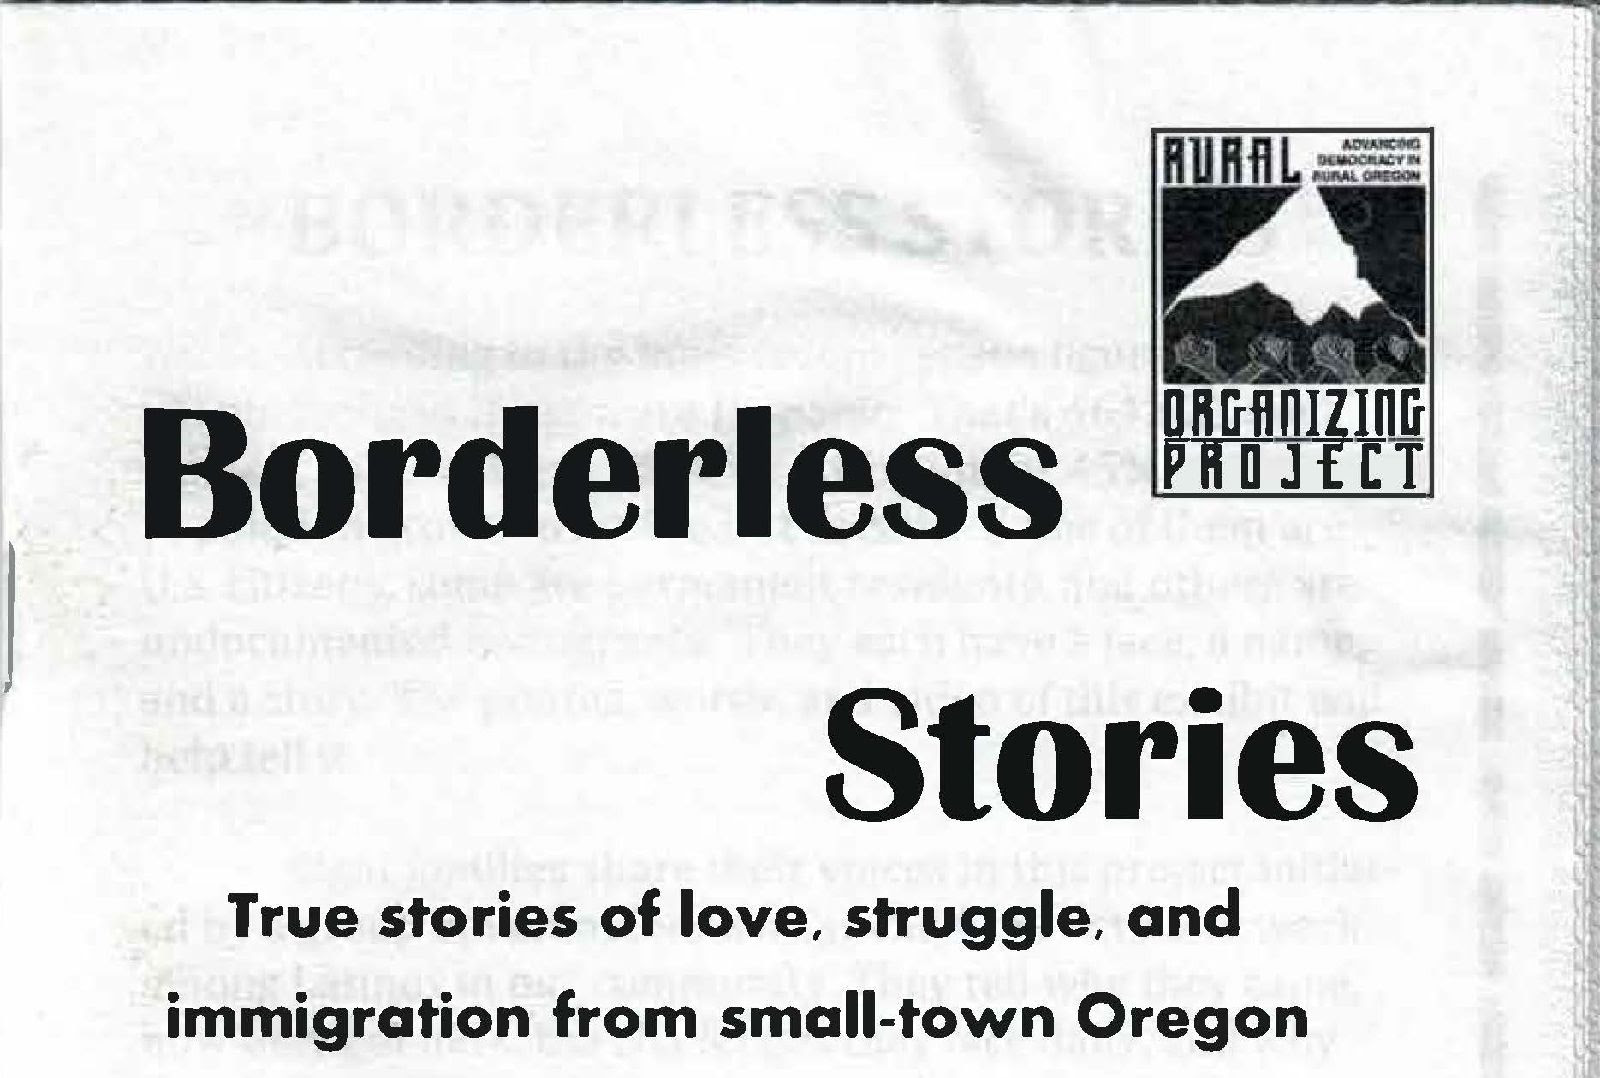 Portada del fanzine de la exhibición Borderless Stories, 2011